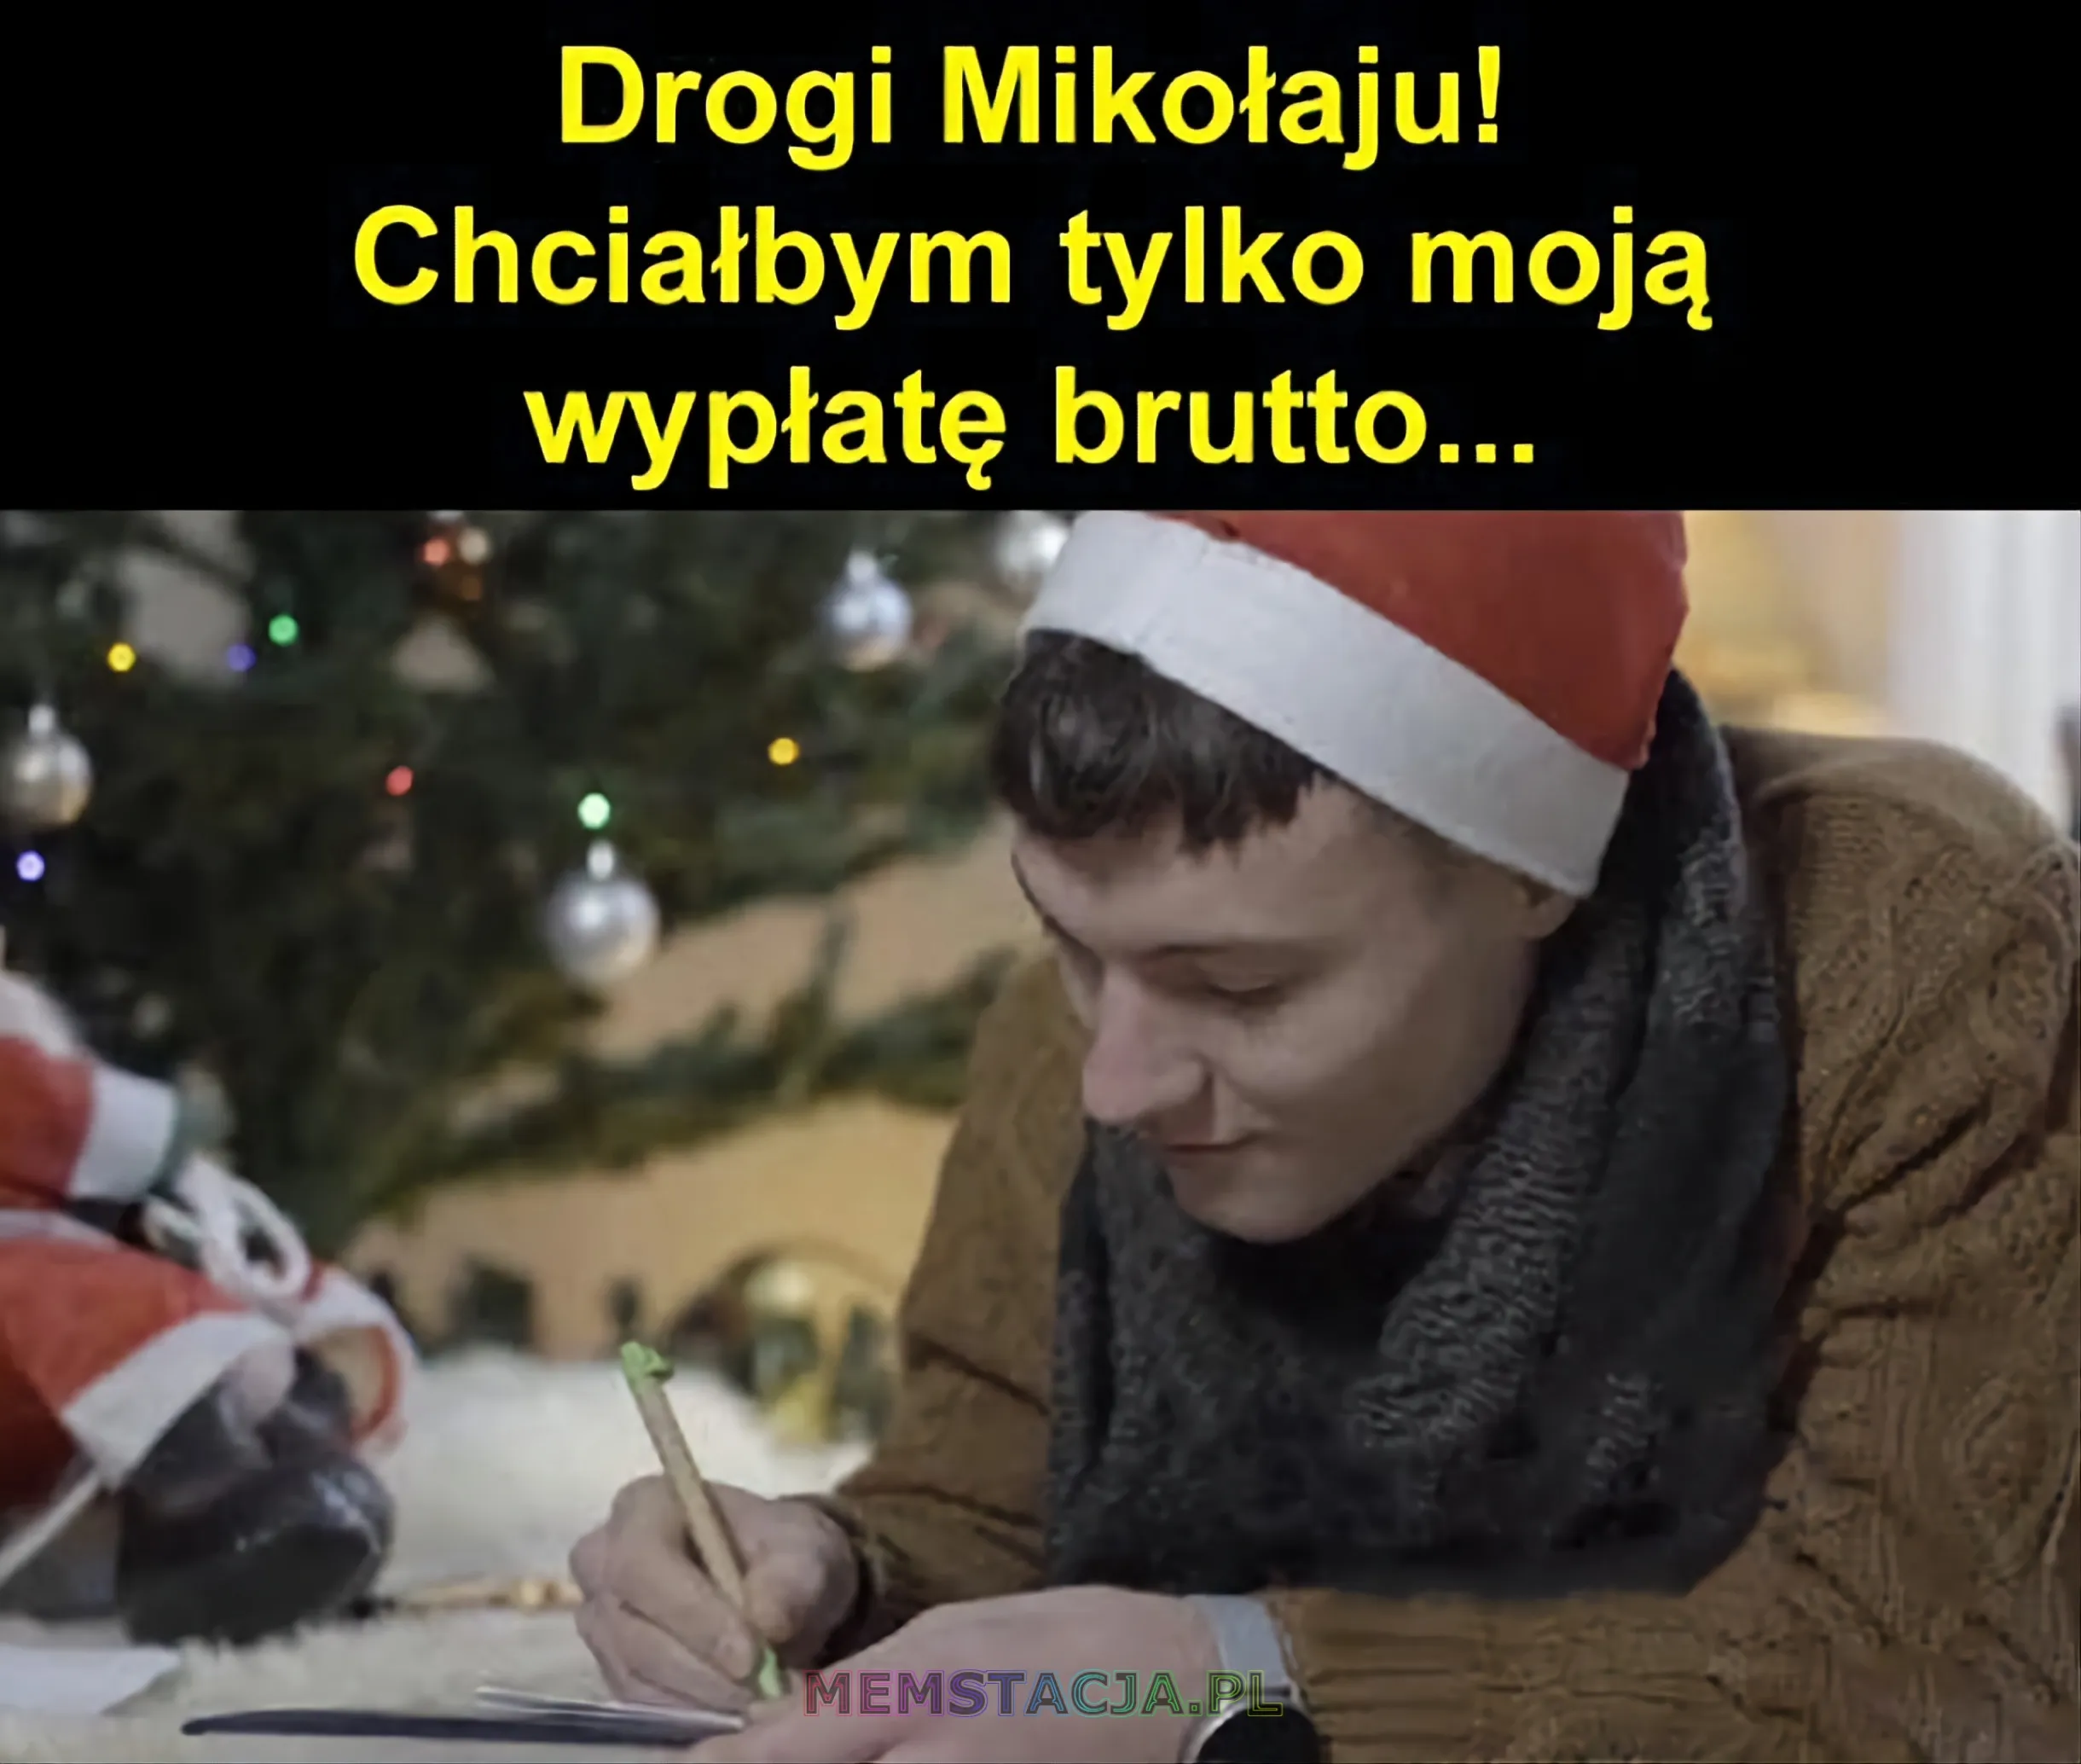 Mem z postacią pisząca list w czapce Mikołaja: 'Drogi Mikołaju! Chciałbym tylko moją wypłatę brutto...'